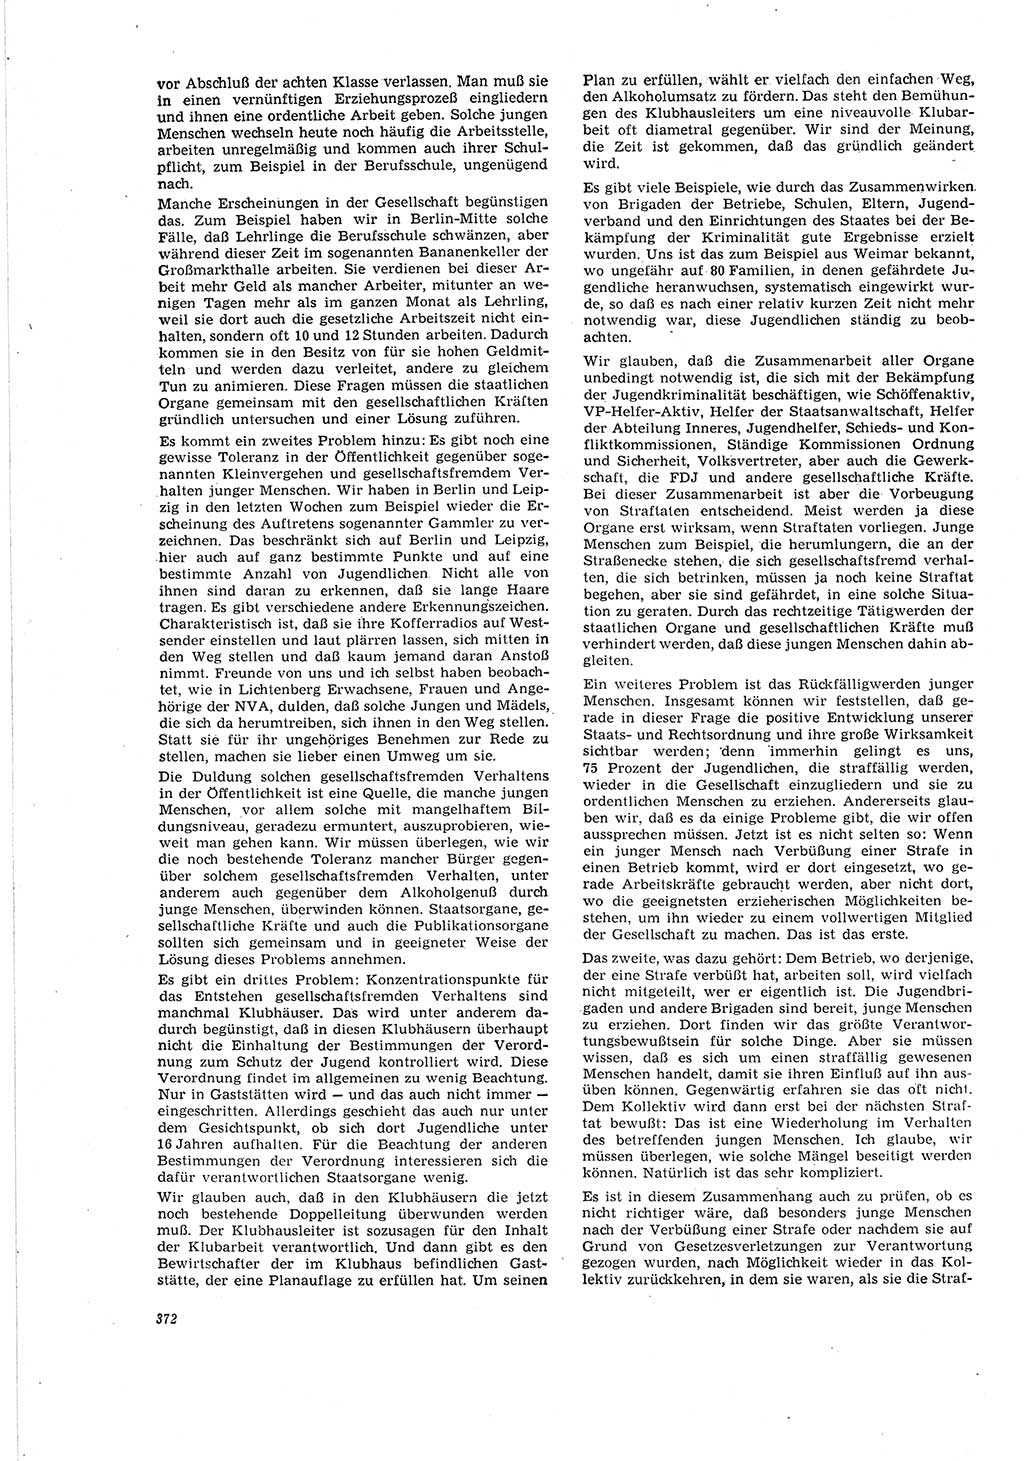 Neue Justiz (NJ), Zeitschrift für Recht und Rechtswissenschaft [Deutsche Demokratische Republik (DDR)], 20. Jahrgang 1966, Seite 372 (NJ DDR 1966, S. 372)